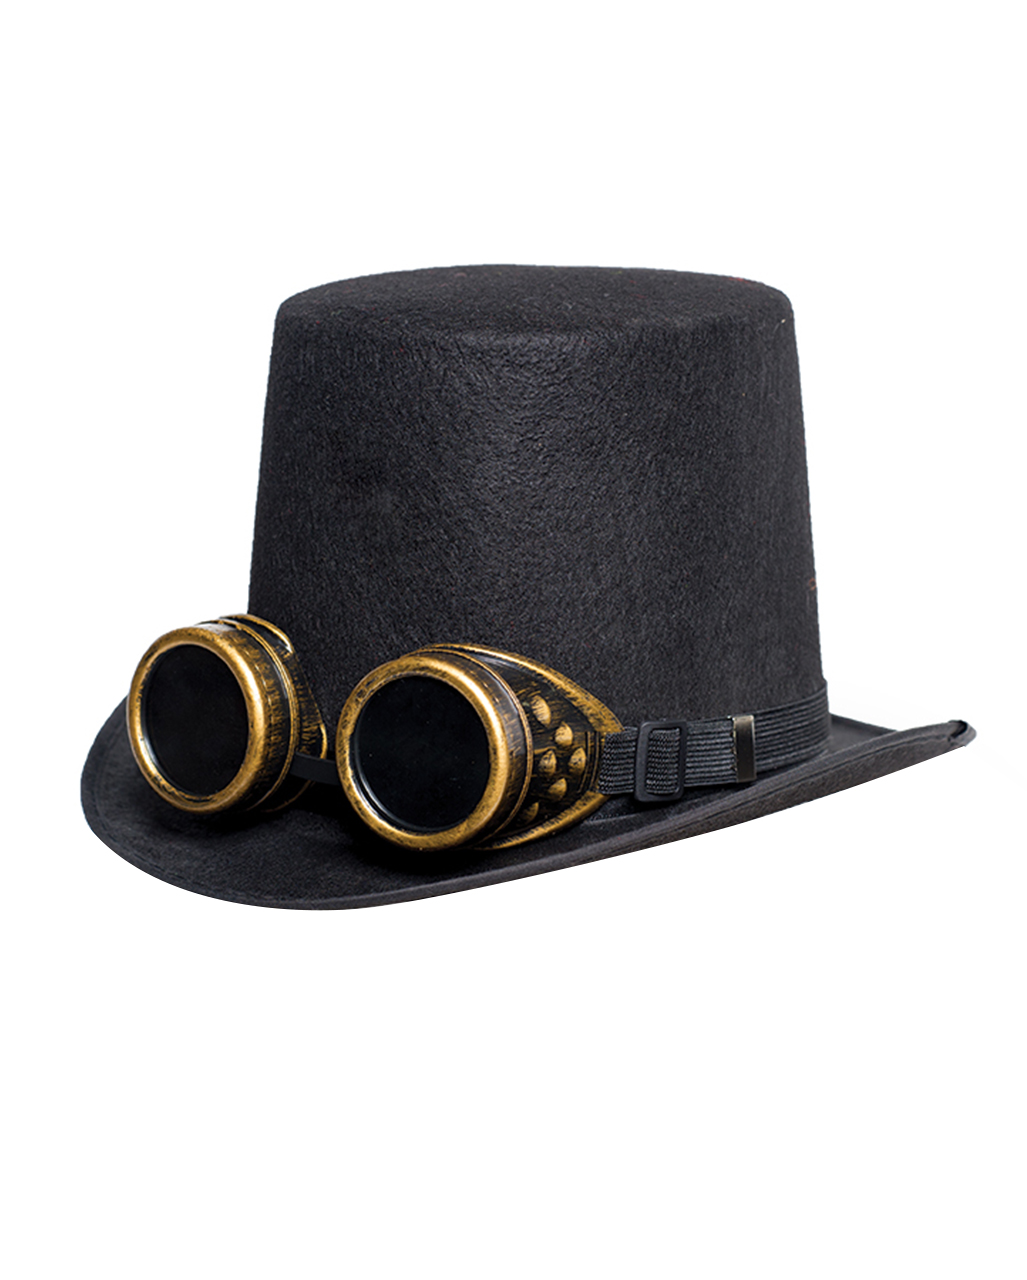 Steampunk Zylinder Hut mit Brille Braun Viktorianische Kopfbedeckung Zylinderhut 